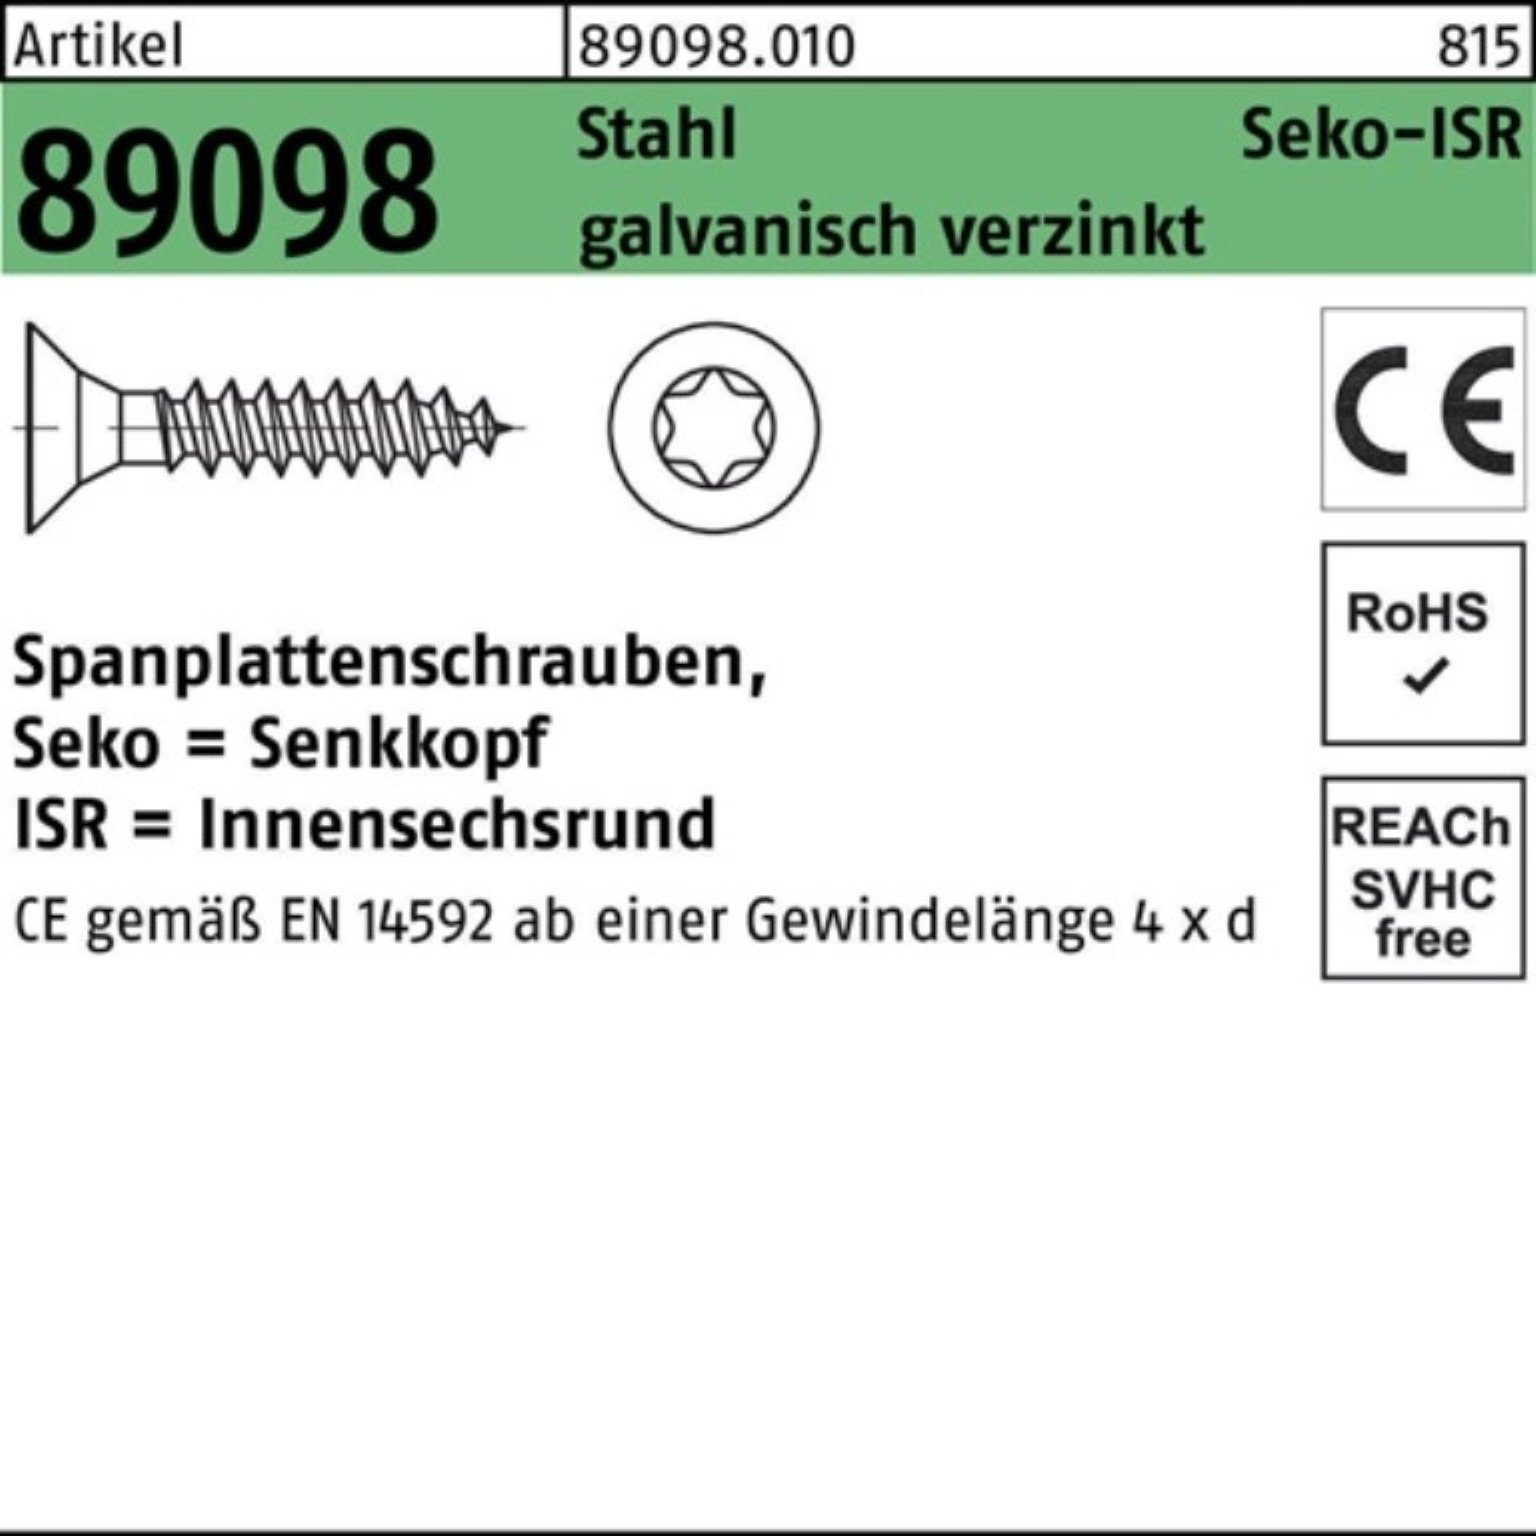 VG Stahl Reyher Pack Spanplattenschraube ga 4,5x40-T20 SEKO ISR R 500er Spanplattenschraube 89098